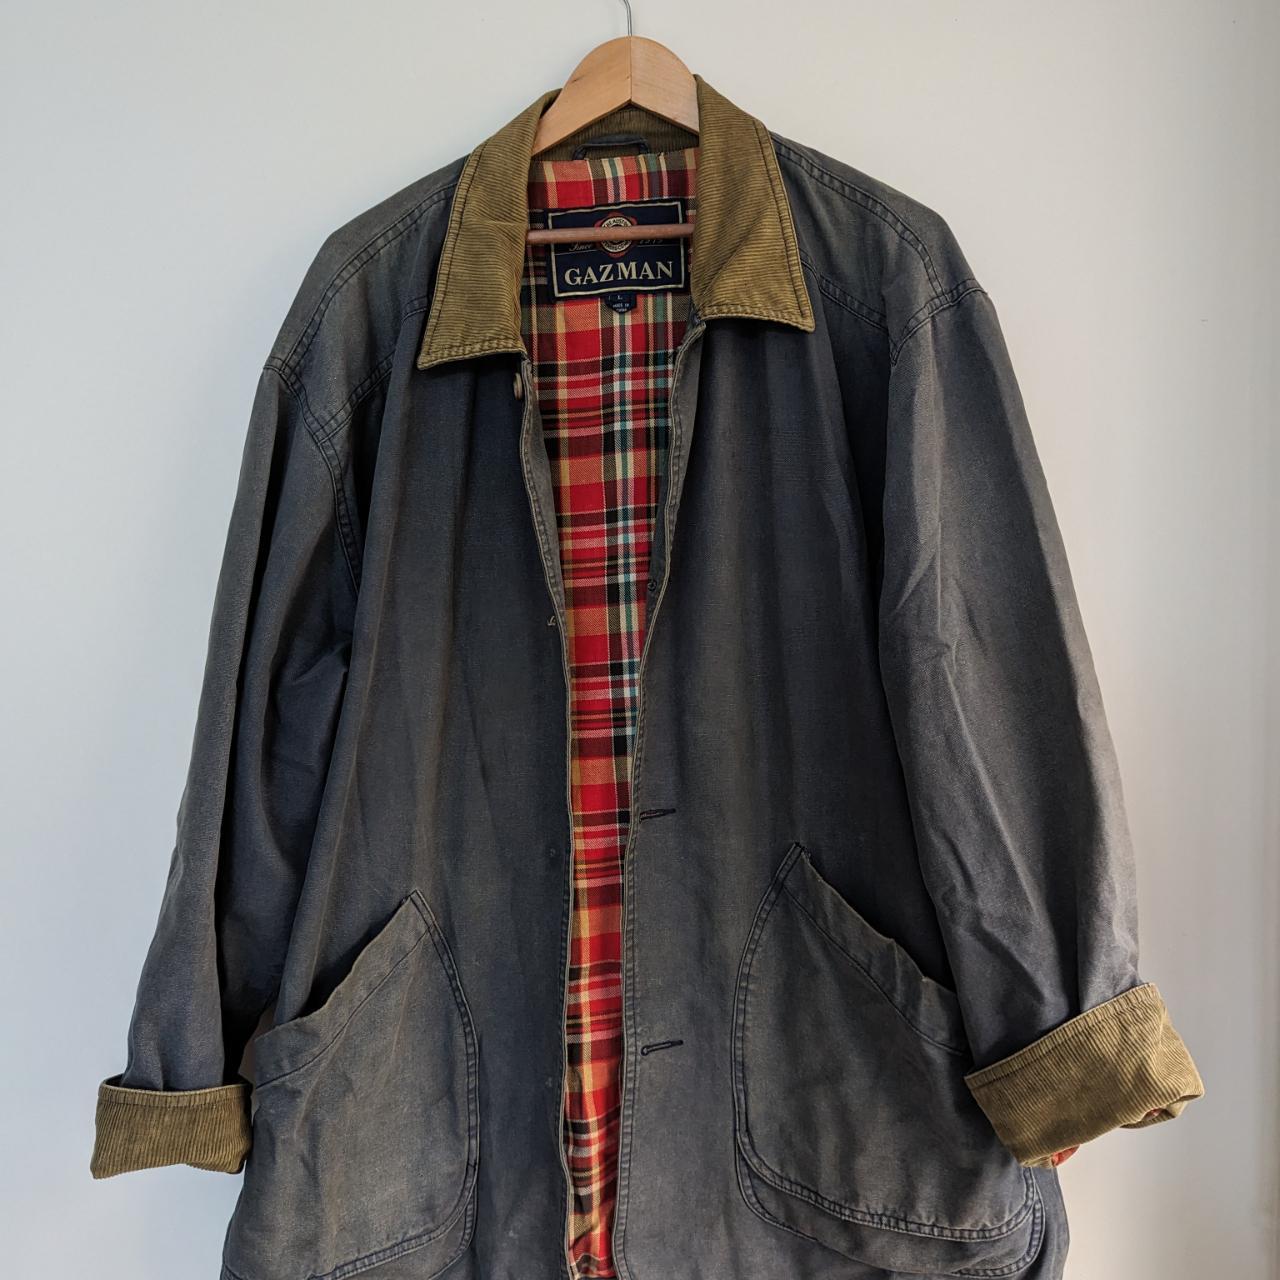 Vintage Gazman jacket with corduroy detailing and... - Depop